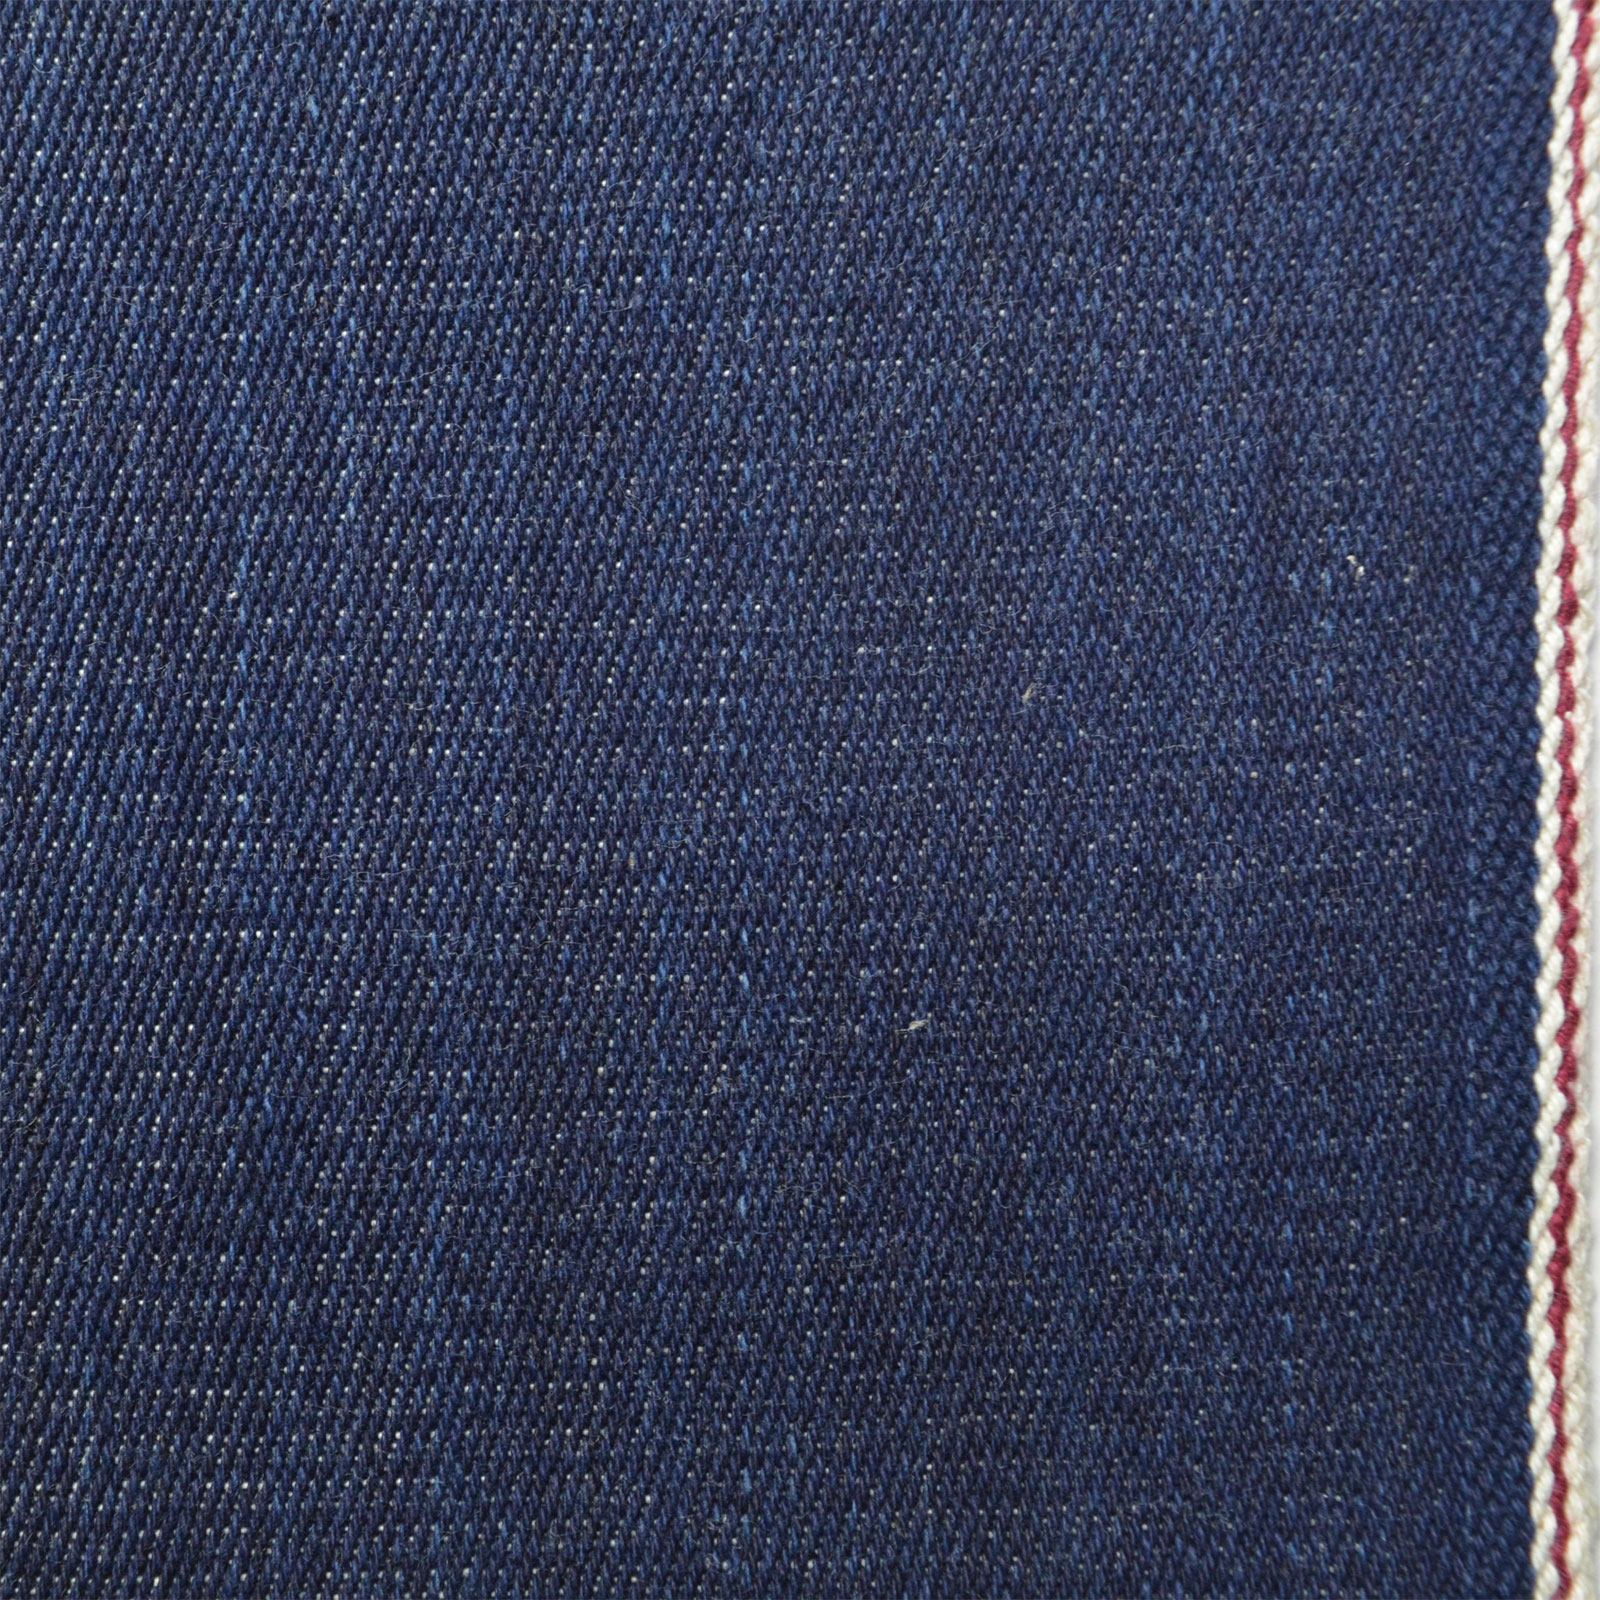 American Indigo Denim Fabric 100% cotton 14.5 oz Heavyweight Fabric by the  yard